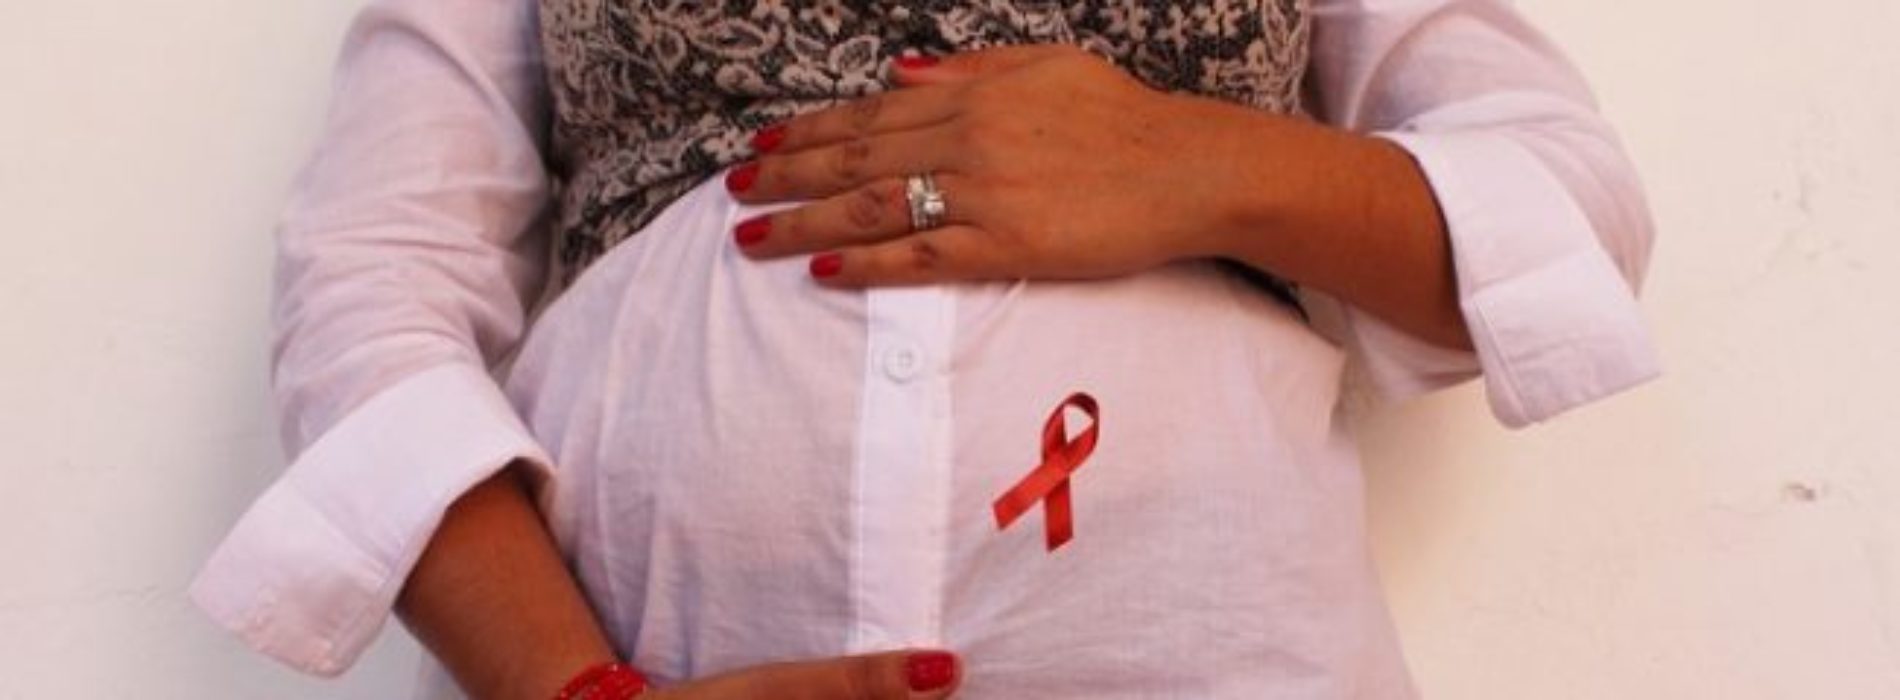 Embarazadas deben realizarse la prueba rápida del VIH:
SSO